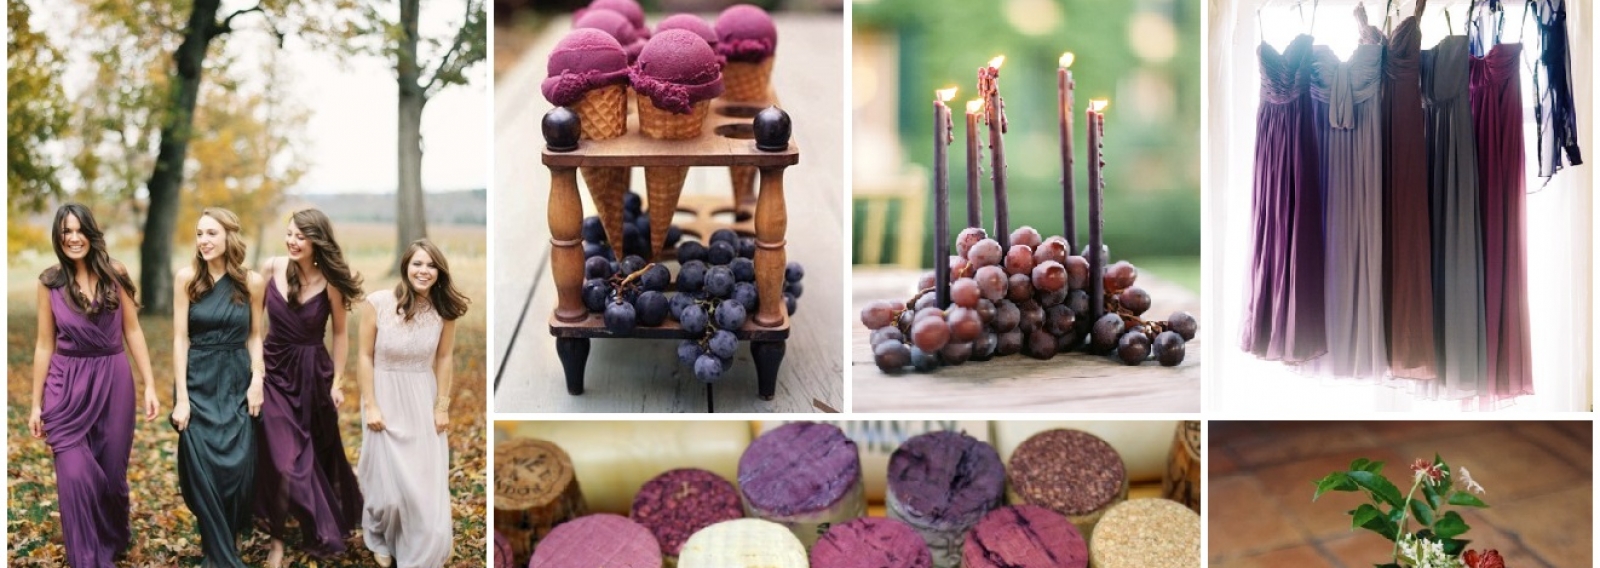 Свадебная палитра: припыленный синий, темно-фиолетовый, фанданго, лавандовый розовый, сиреневый и виноград